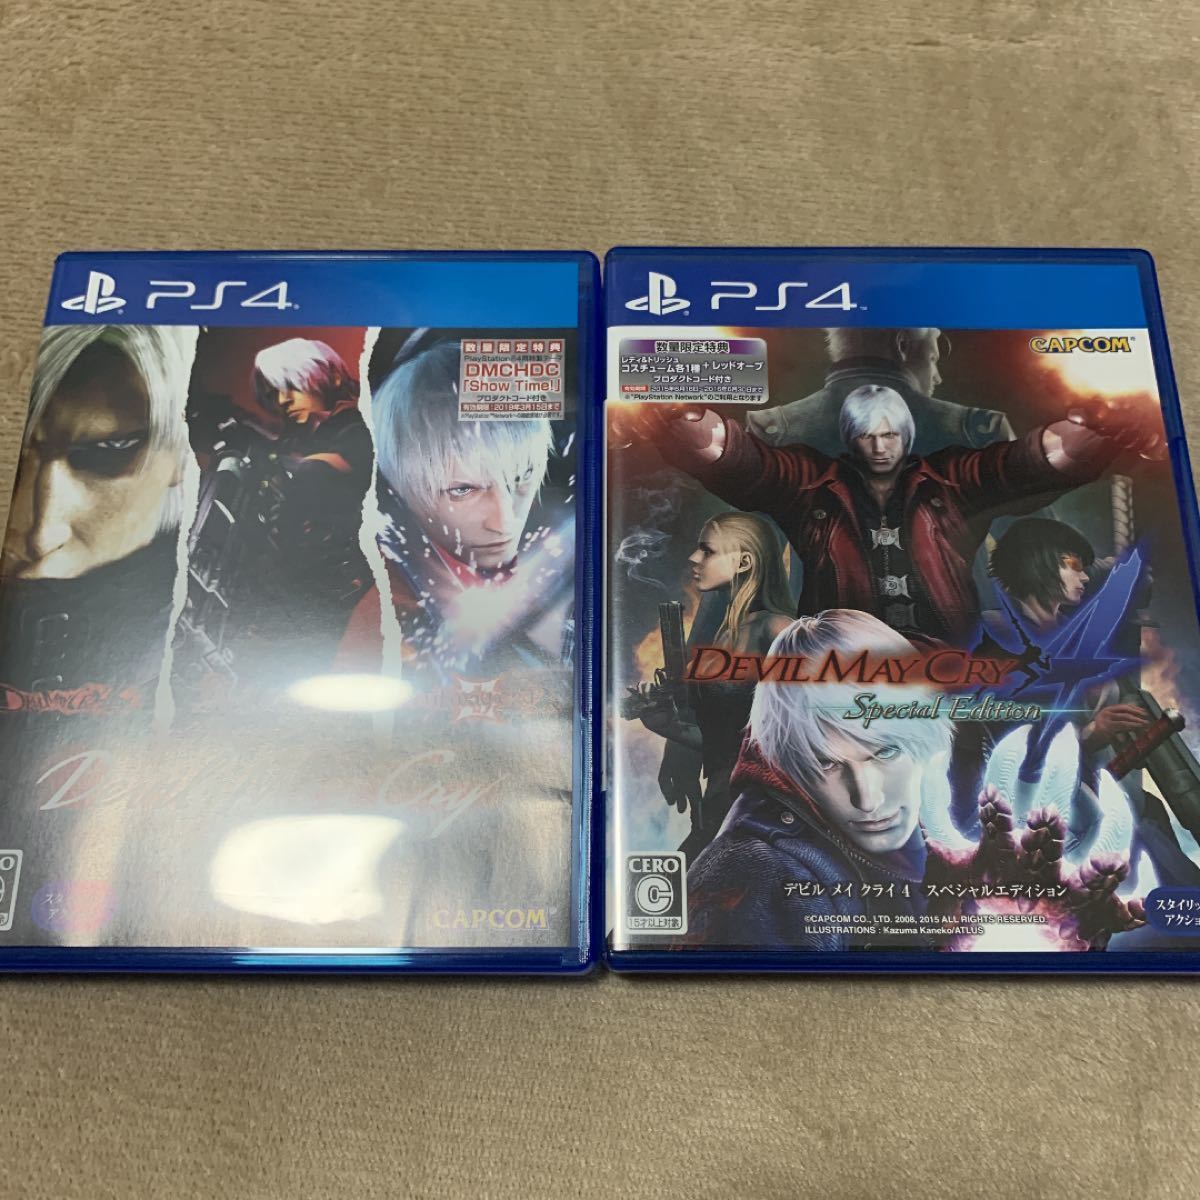 【PS4】デビル メイ クライ HDコレクション、4 スペシャルエディション